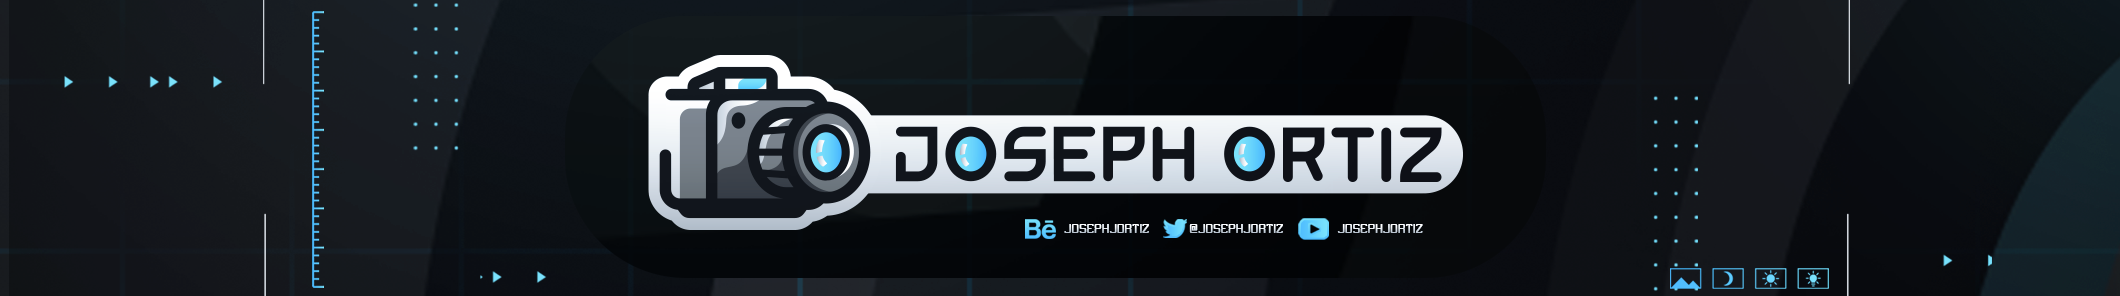 Joseph Ortiz's profile banner